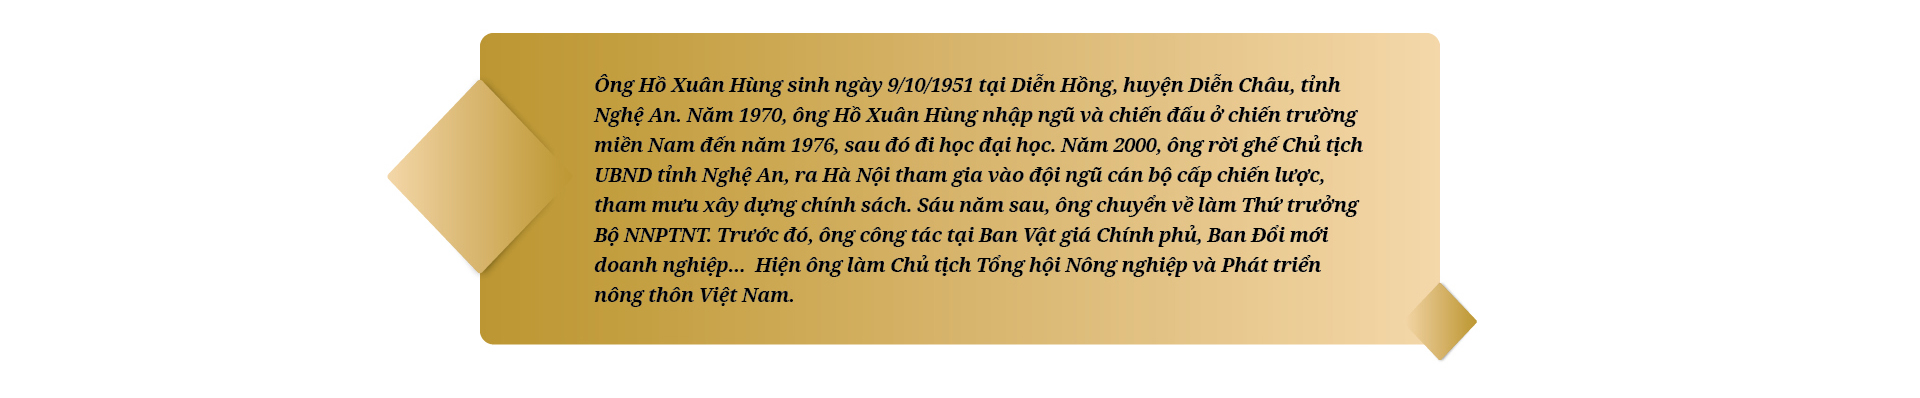 Nguyên Thứ trưởng Bộ NNPTNT, nguyên Chủ tịch UBND tỉnh Nghệ An Hồ Xuân Hùng: &quot;Một đời nặng nợ với dân với mình&quot; - Ảnh 20.